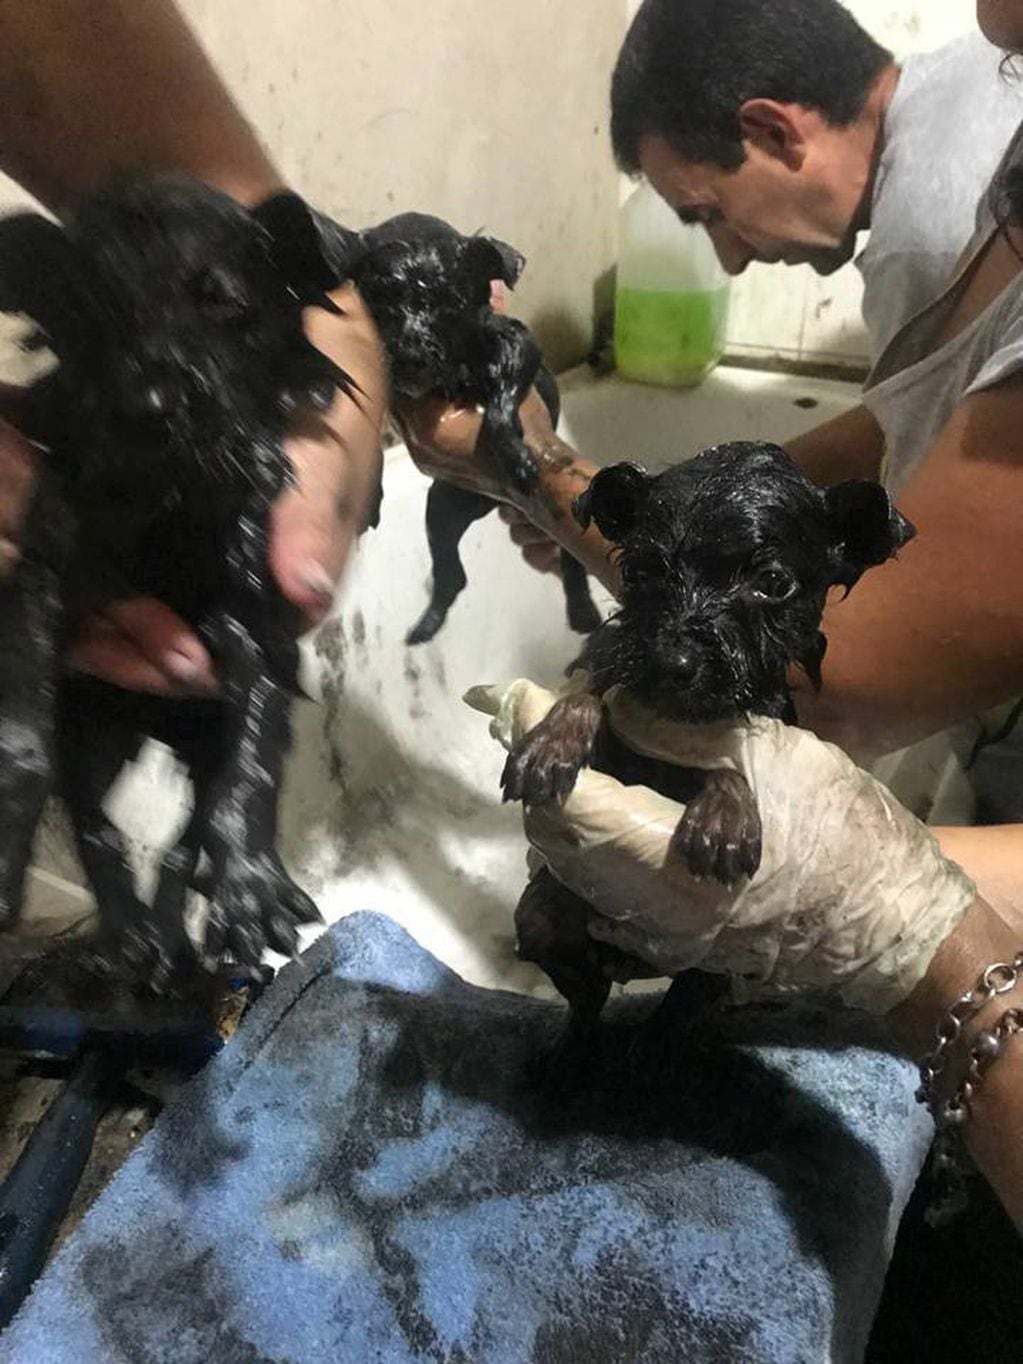 Sumergieron a perritos en brea. (Foto: VOLUNTARIADO DE ZOONOSIS LANÚS)